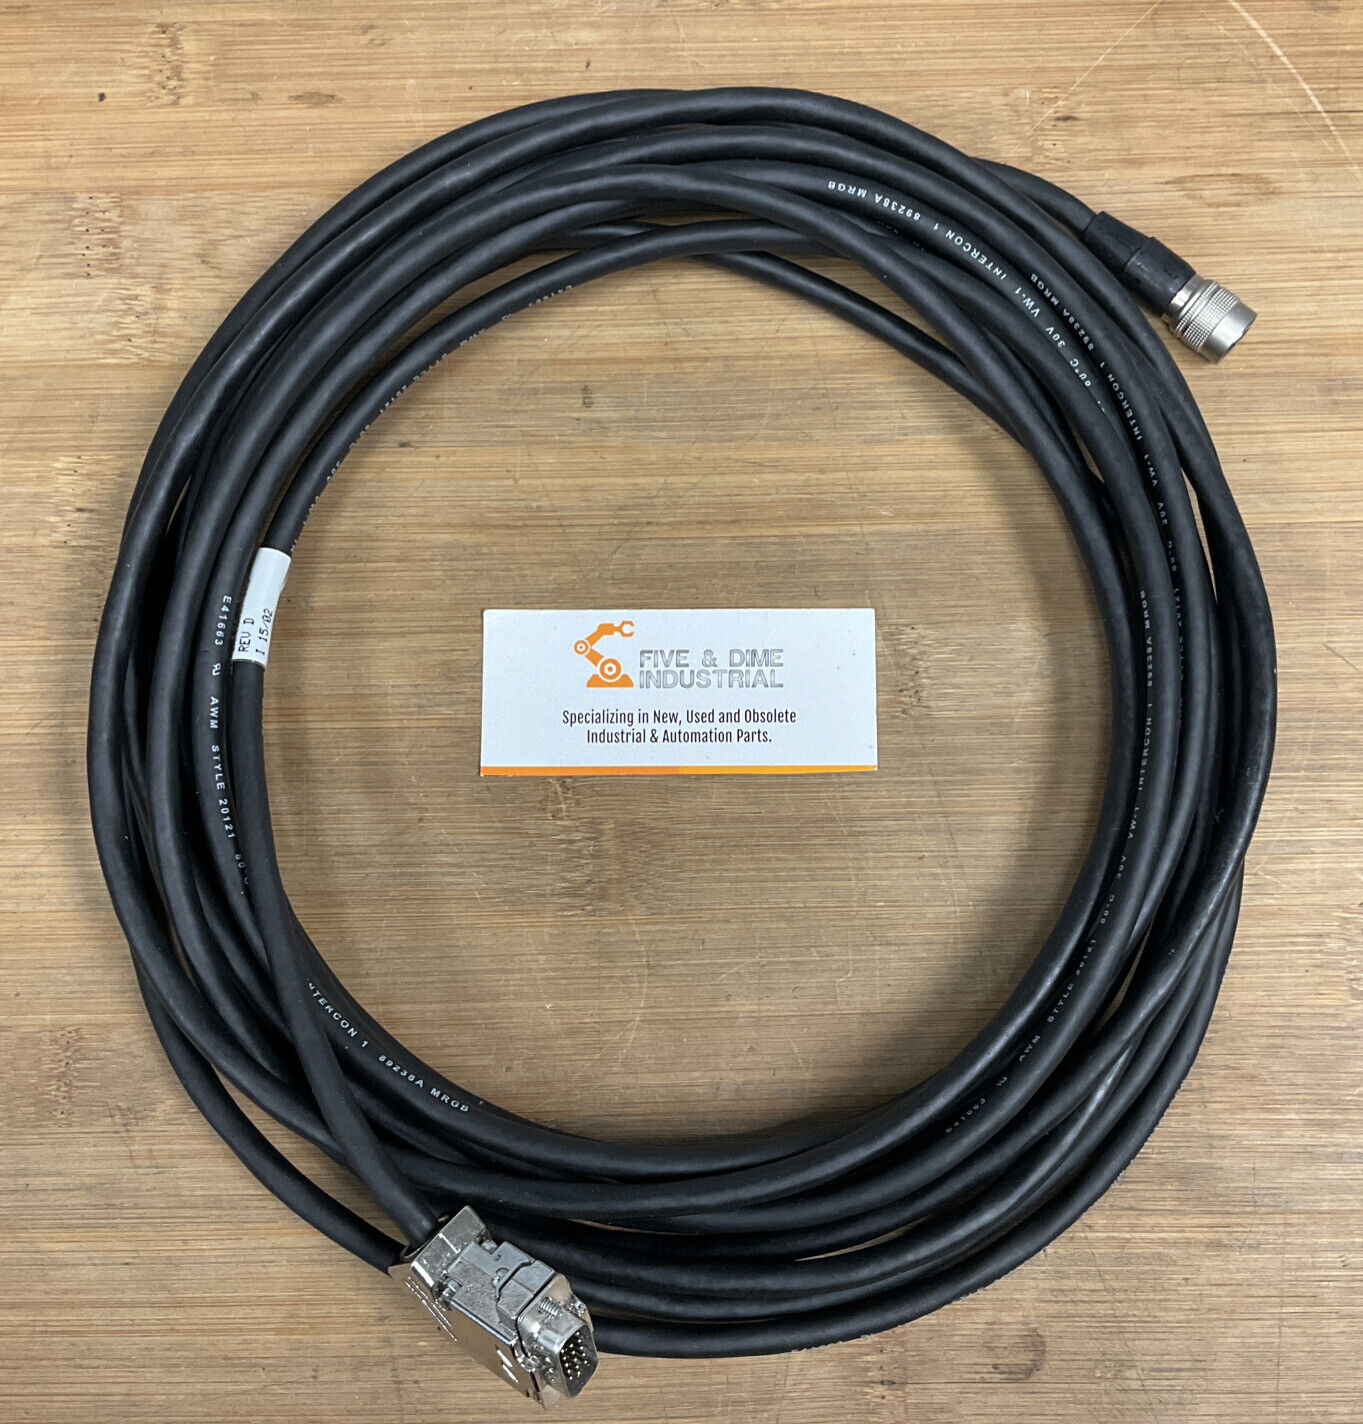 Siemens CA-XCHM-025 Rev. D Cable / Cordset  (CBL115)